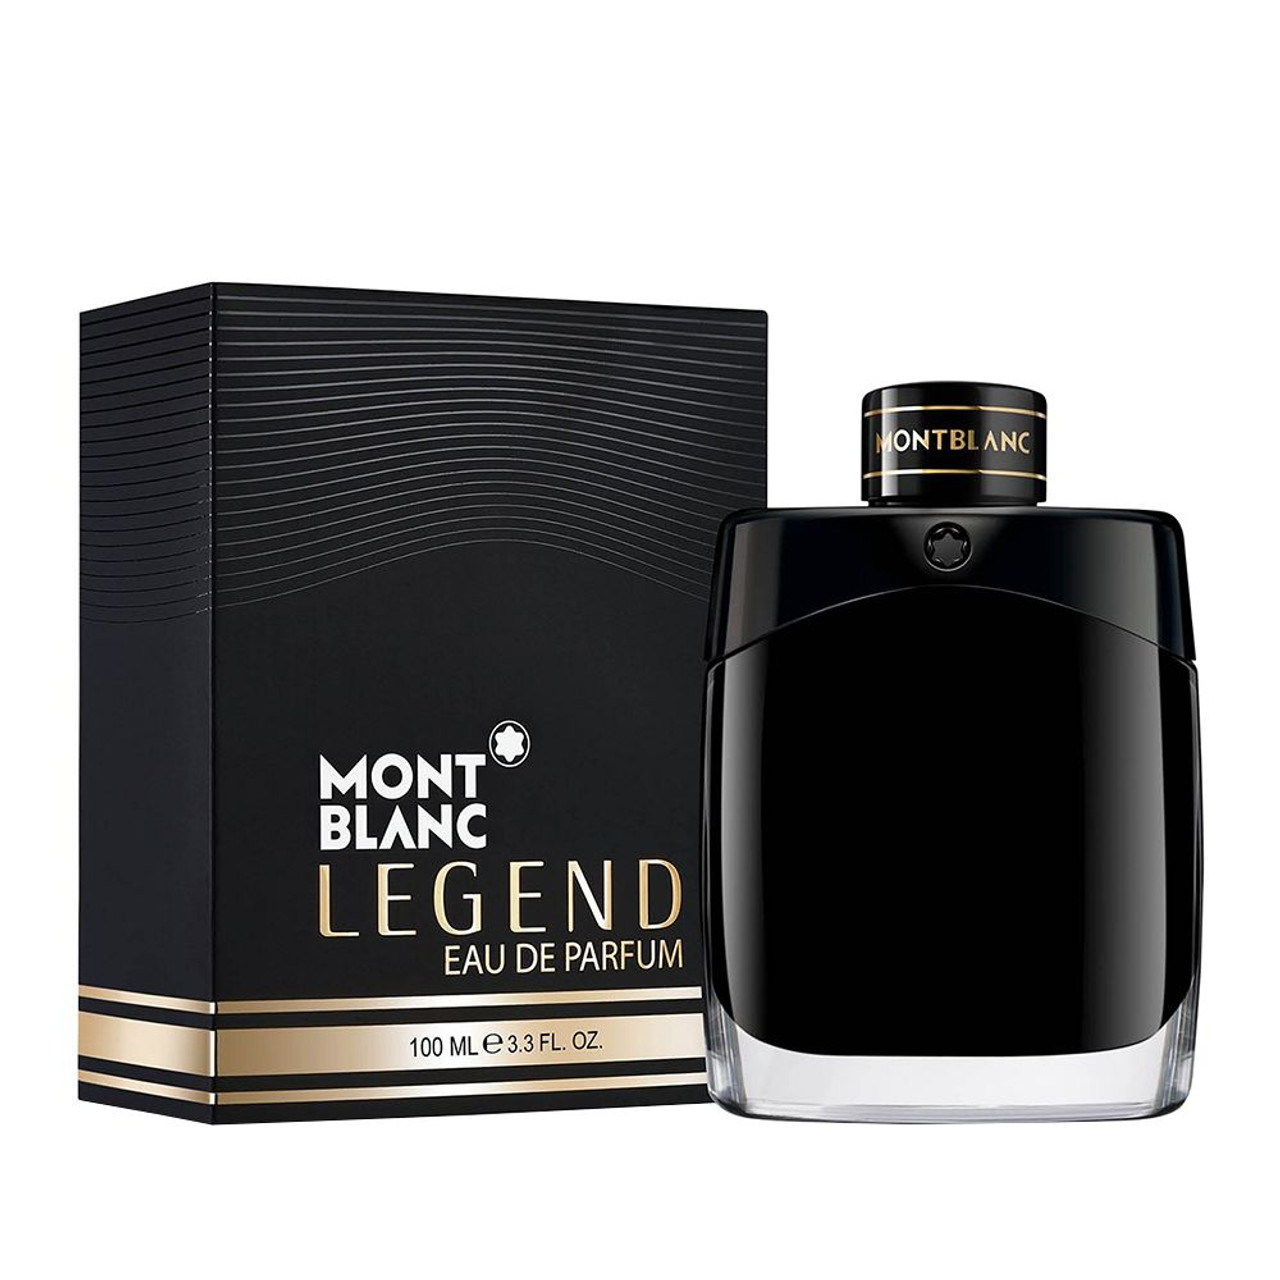 MONT BLANC - Legend Eau de Parfum 3.3 oz. - Beauty Bridge